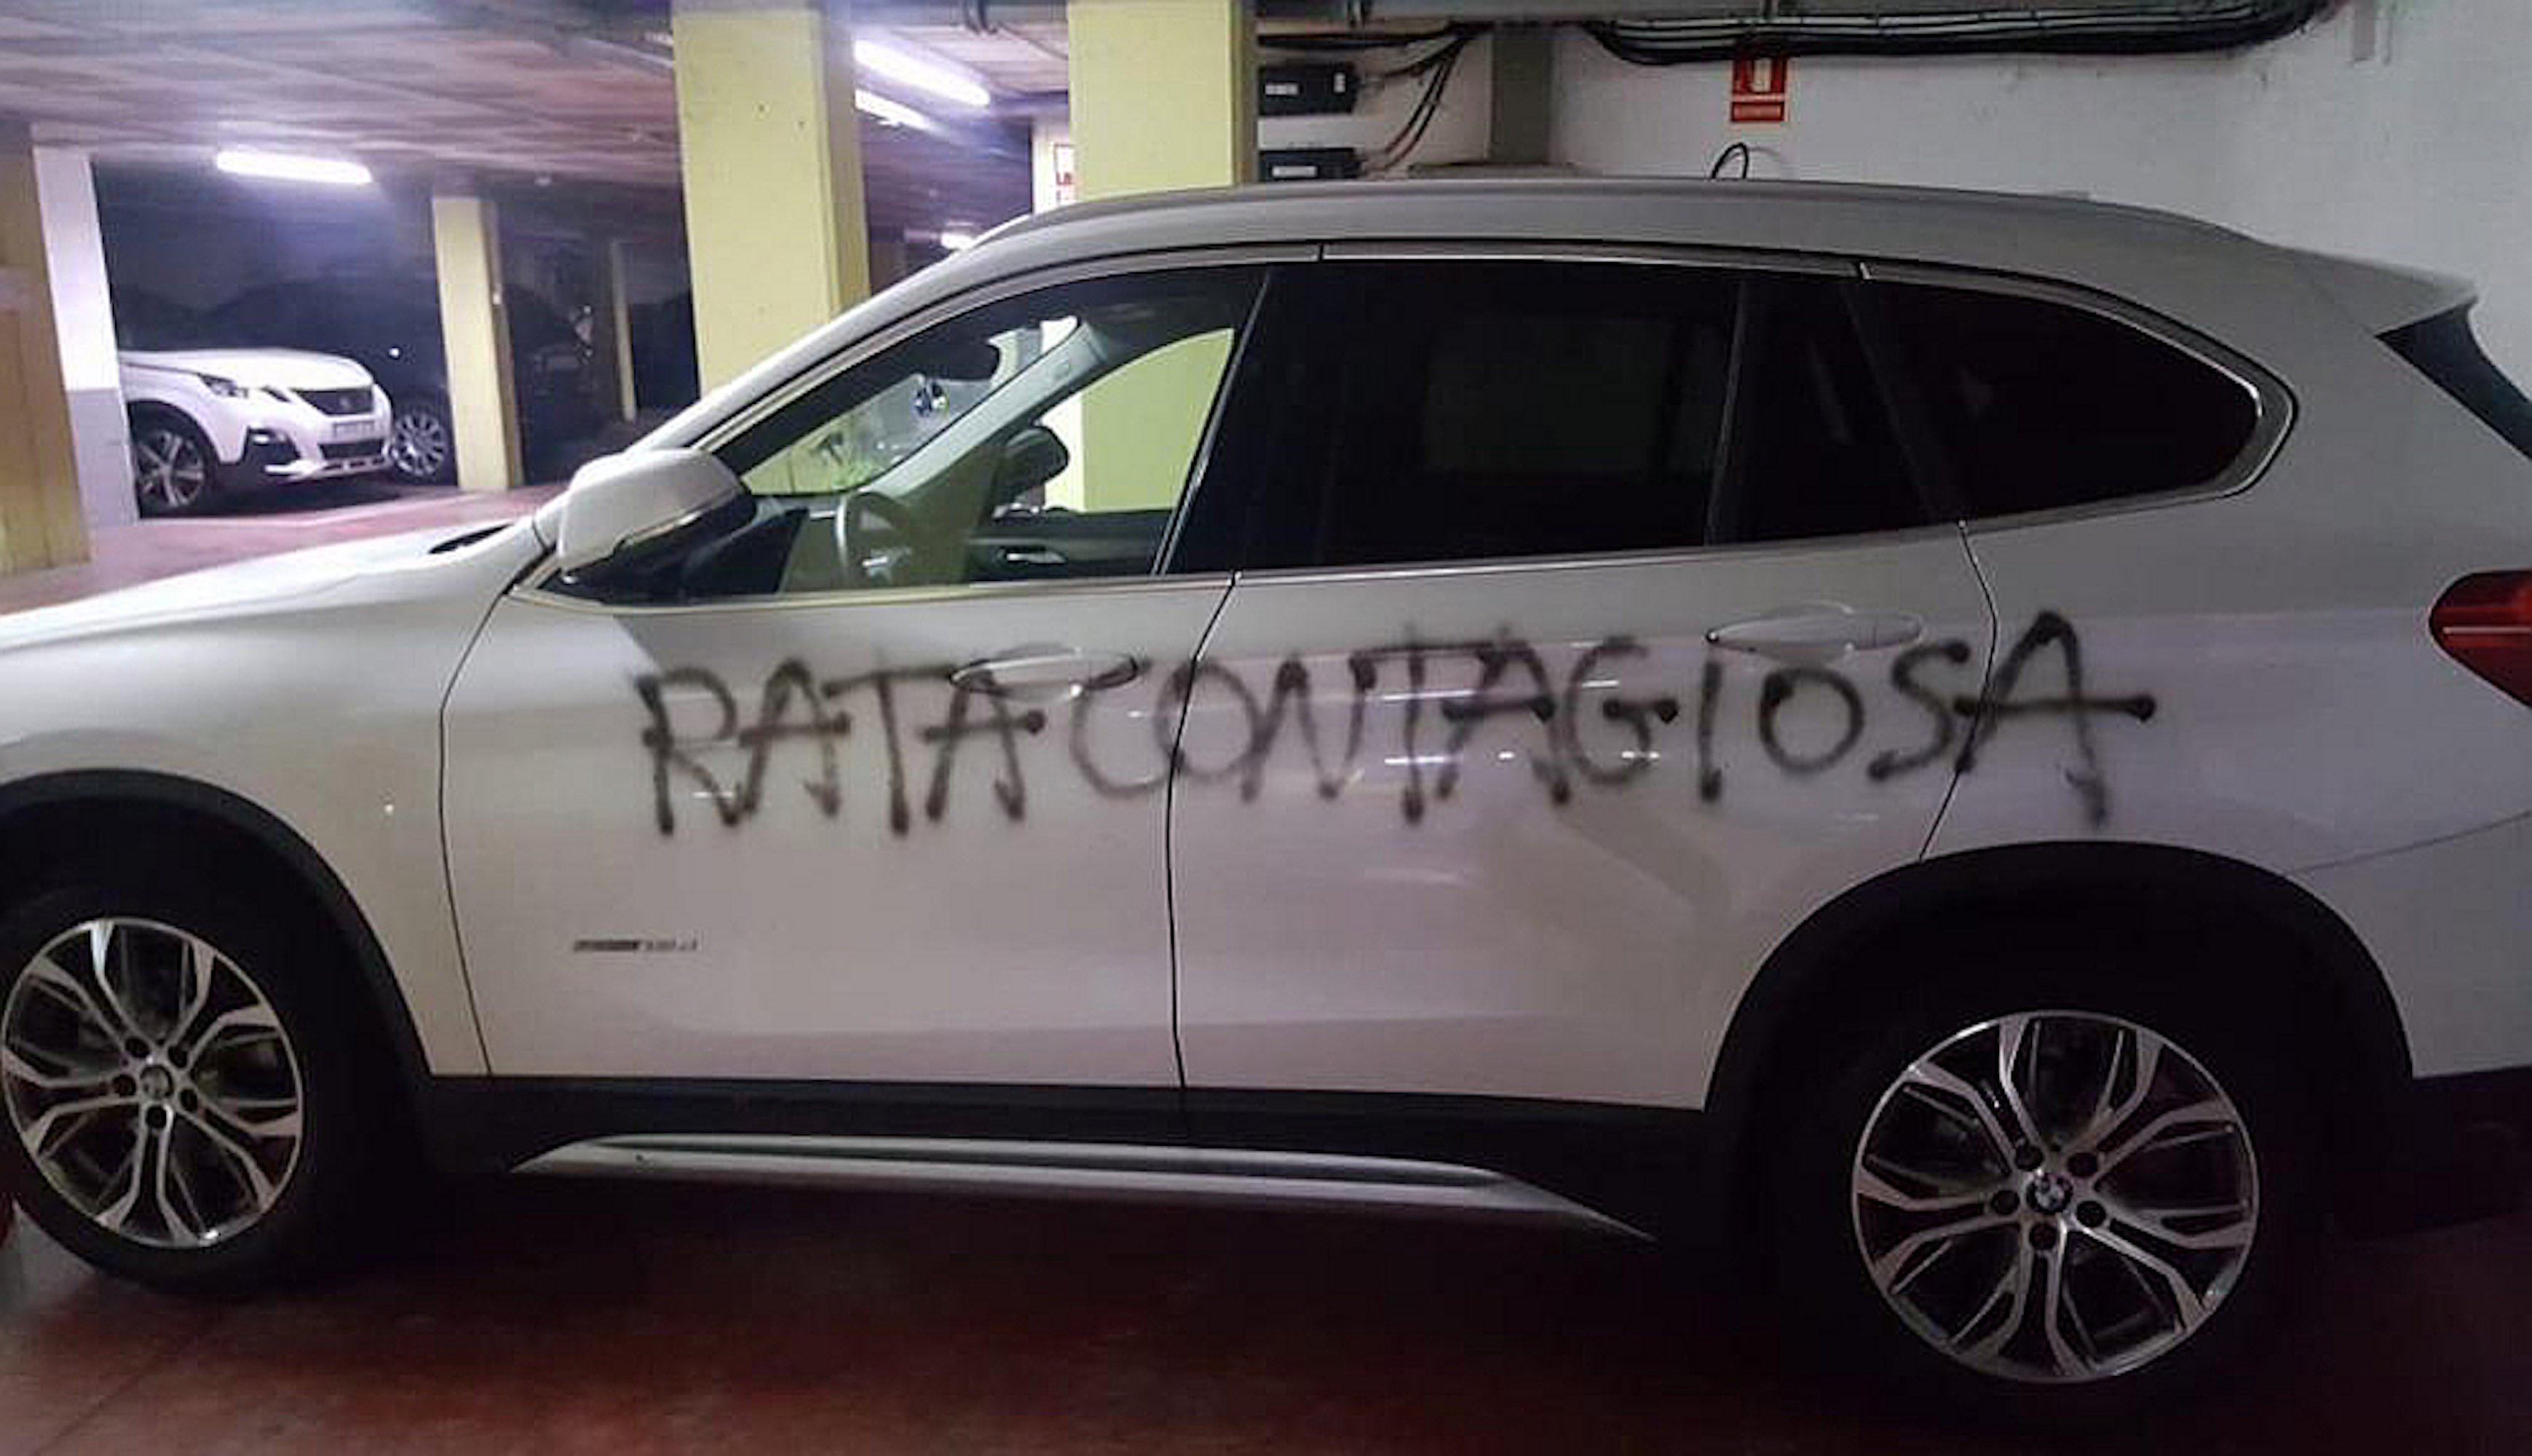 Escriben "rata contagiosa" en el coche de una médica ginecóloga de Barcelona